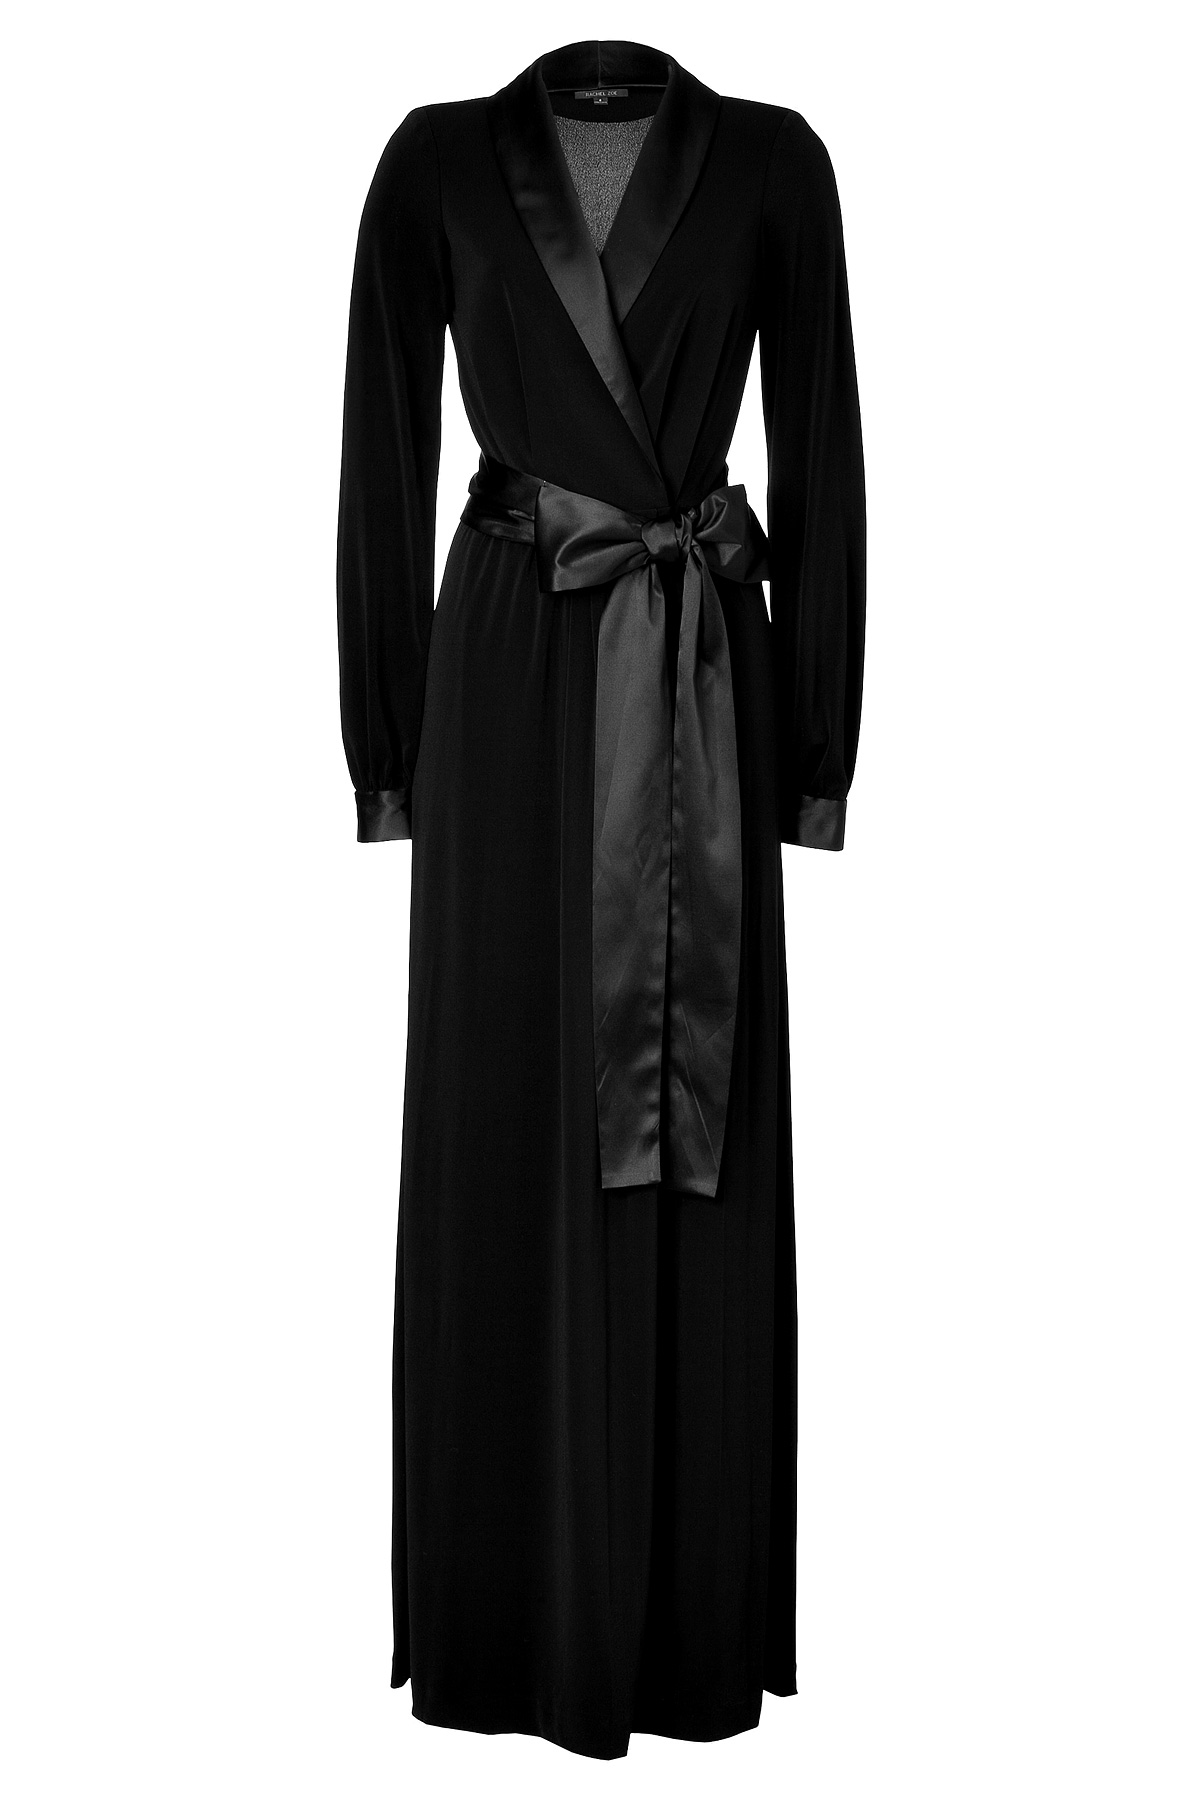 Lyst - Rachel zoe Black Tuxedo Estella Gown in Black